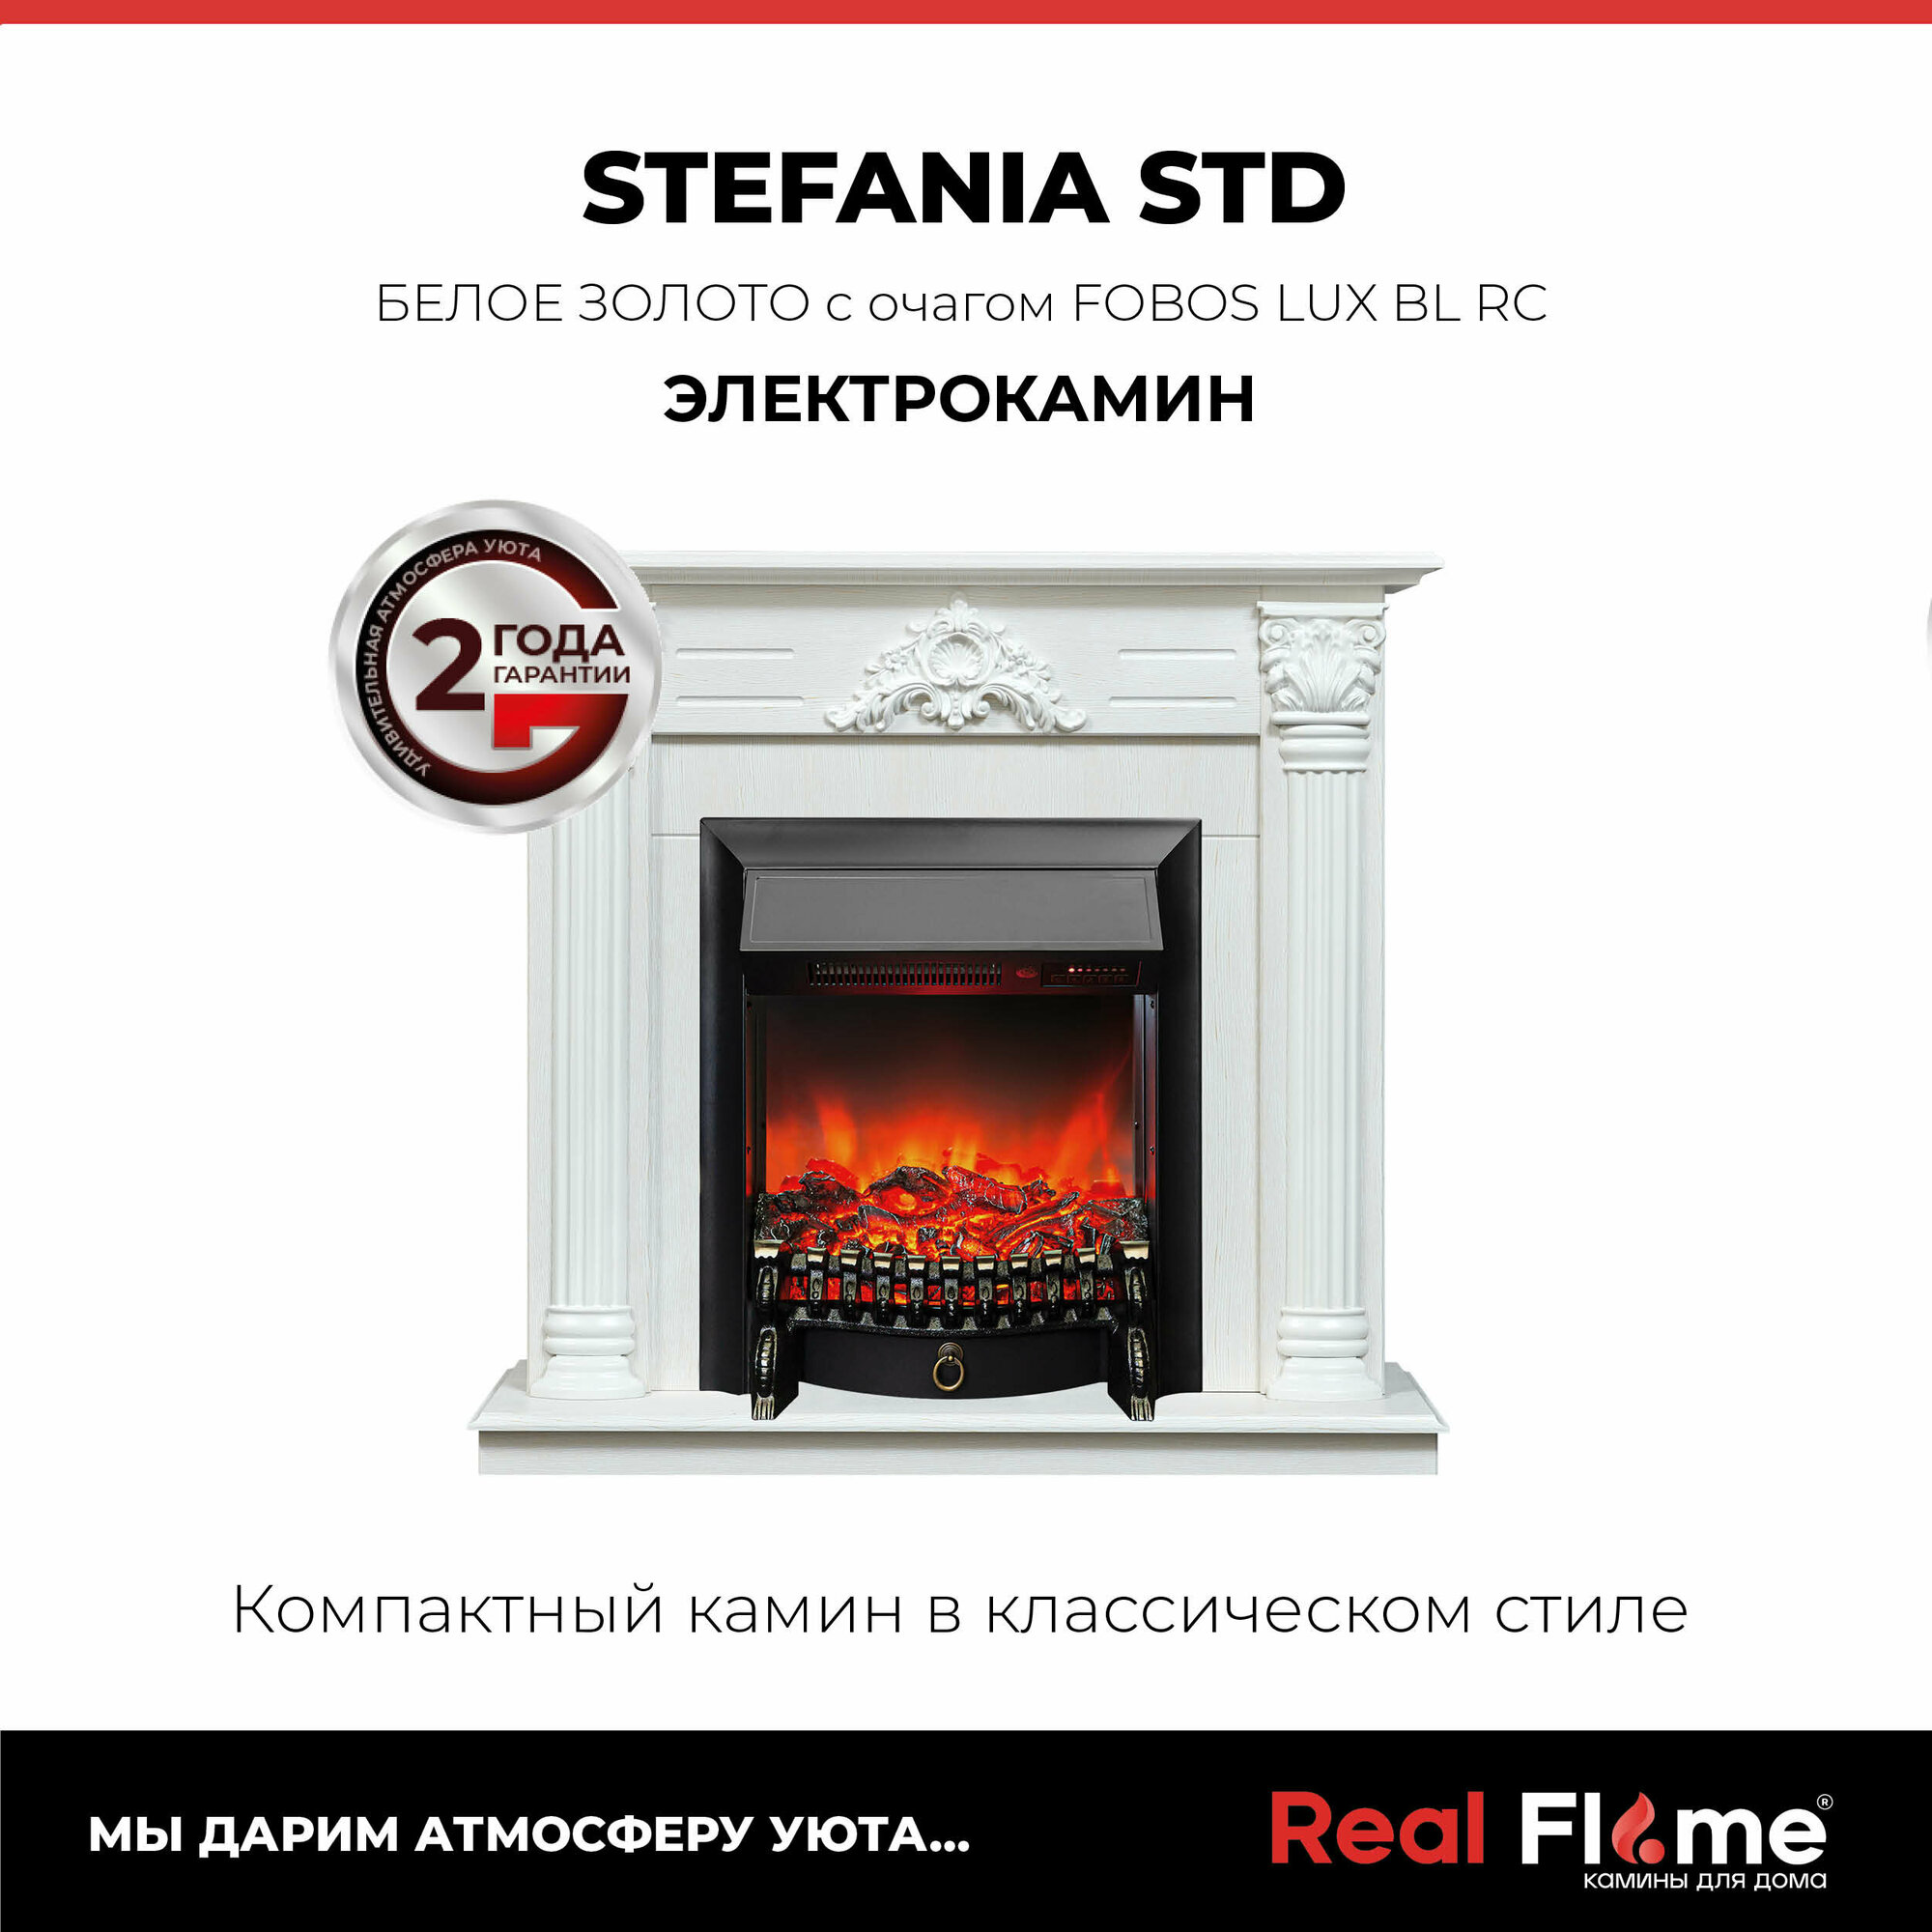 Электрокамин RealFlame Stefania WT с Fobos s Lux BL, светлый портал, пульт ДУ